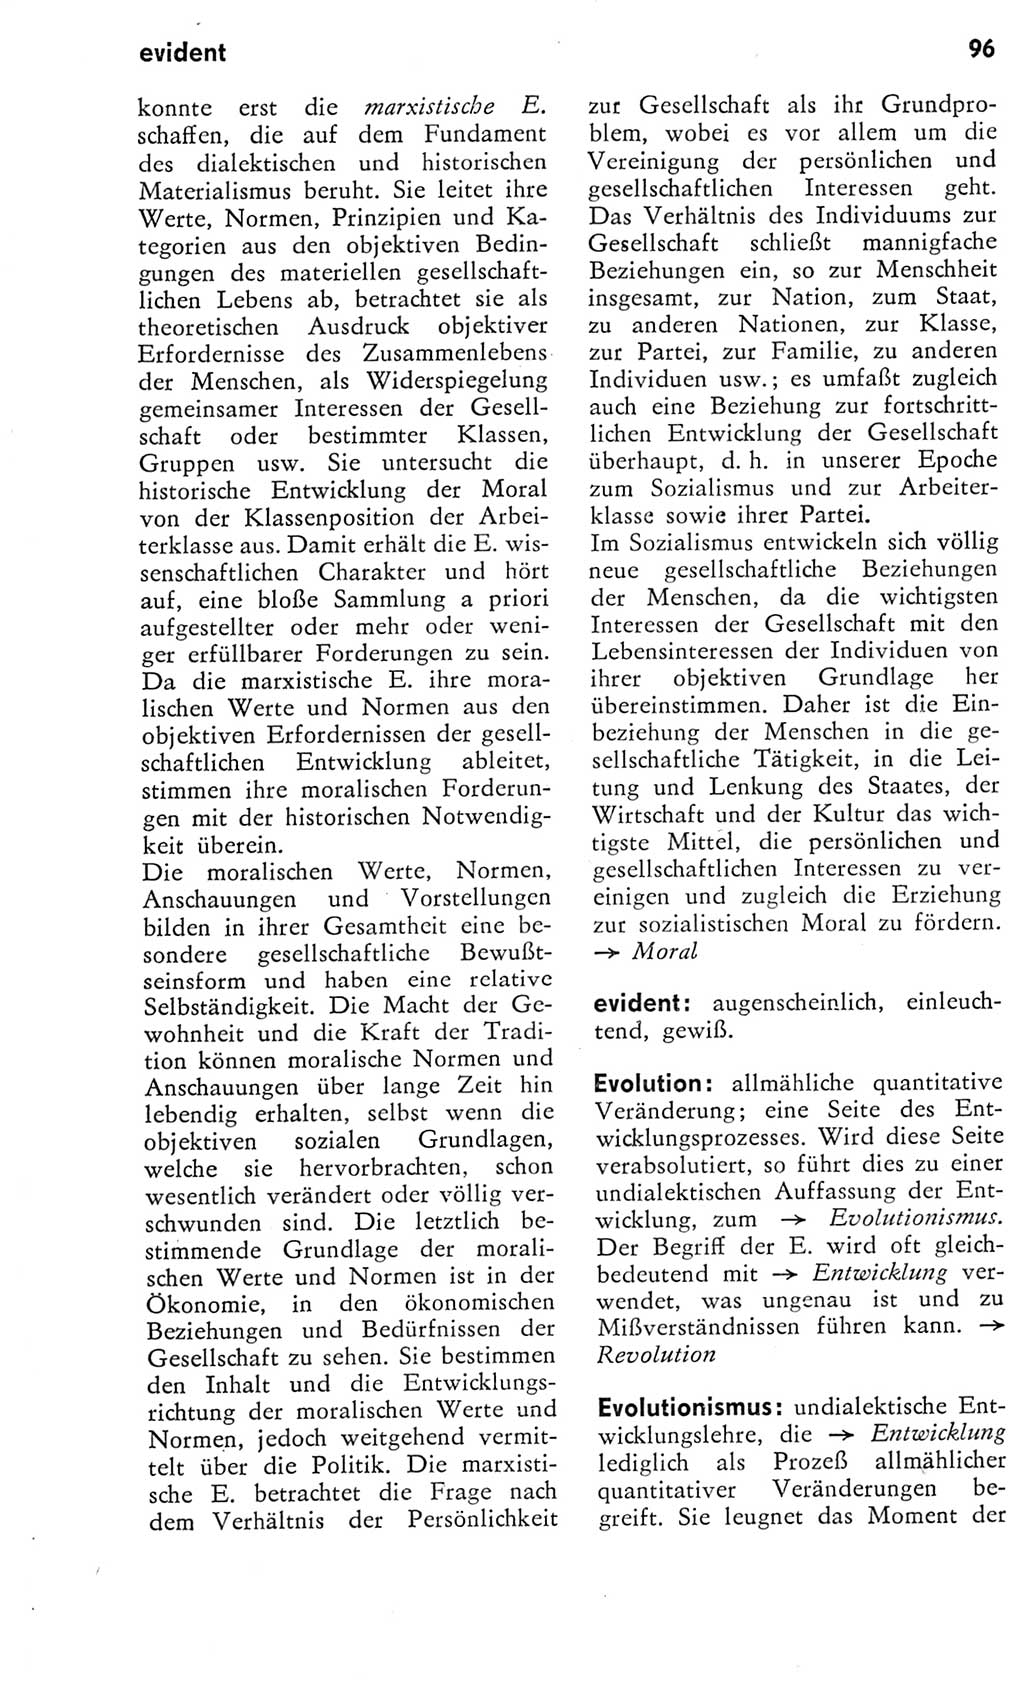 Kleines Wörterbuch der marxistisch-leninistischen Philosophie [Deutsche Demokratische Republik (DDR)] 1975, Seite 96 (Kl. Wb. ML Phil. DDR 1975, S. 96)